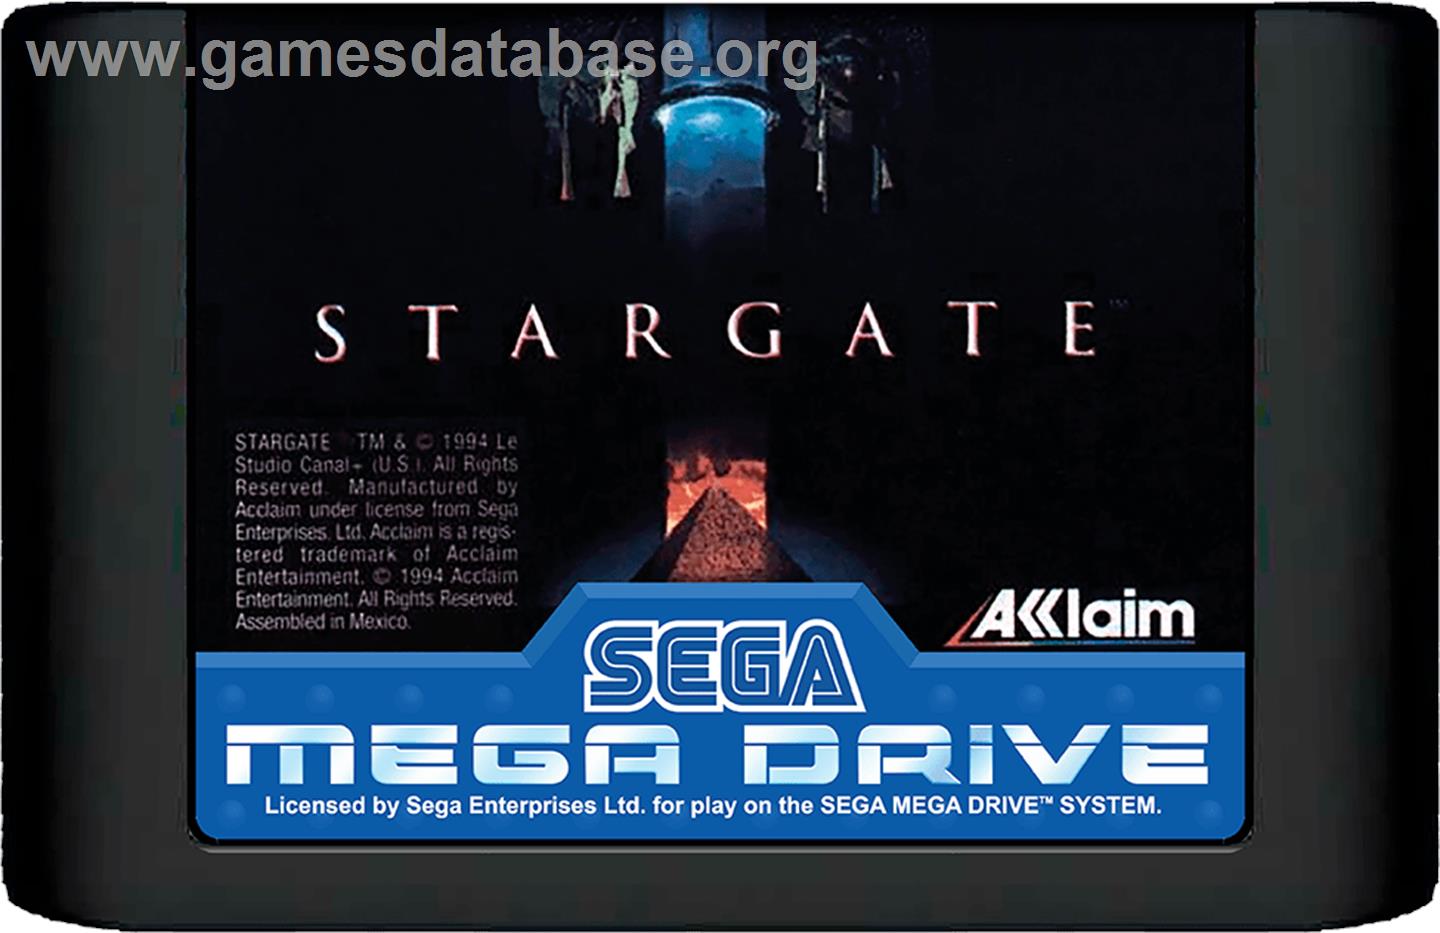 Stargate - Sega Genesis - Artwork - Cartridge